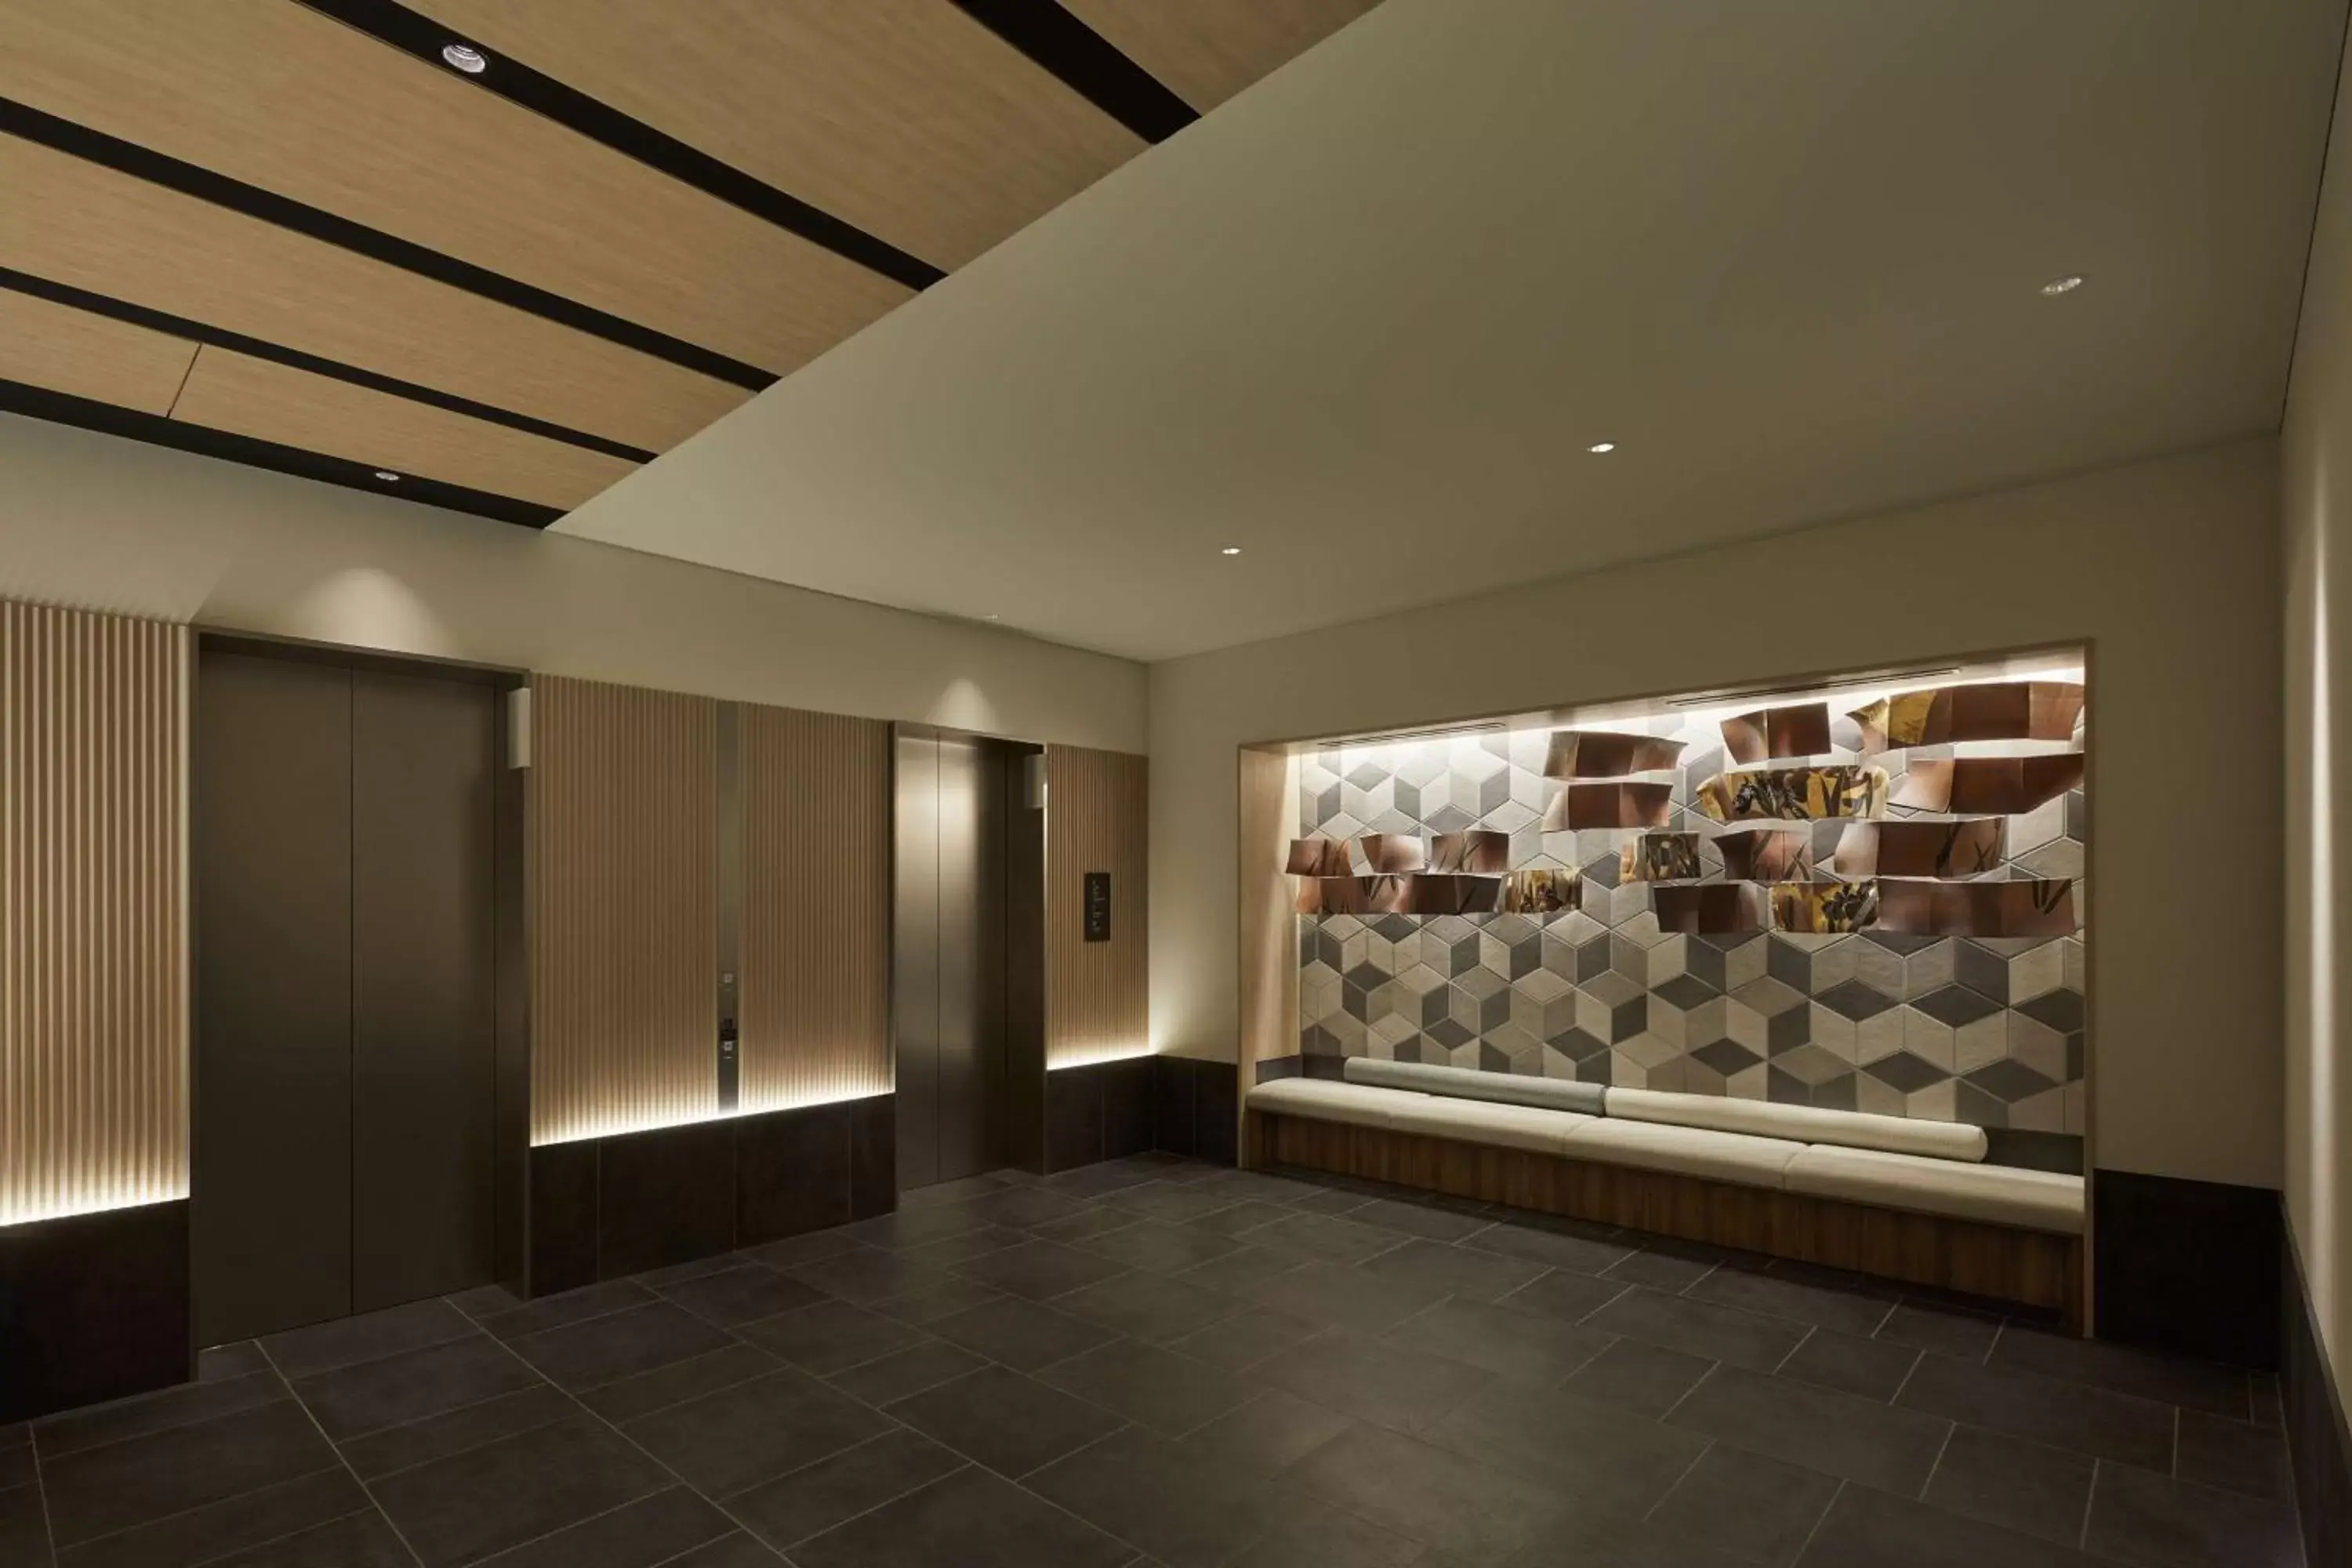 Lobby or reception in Hyatt House Kanazawa